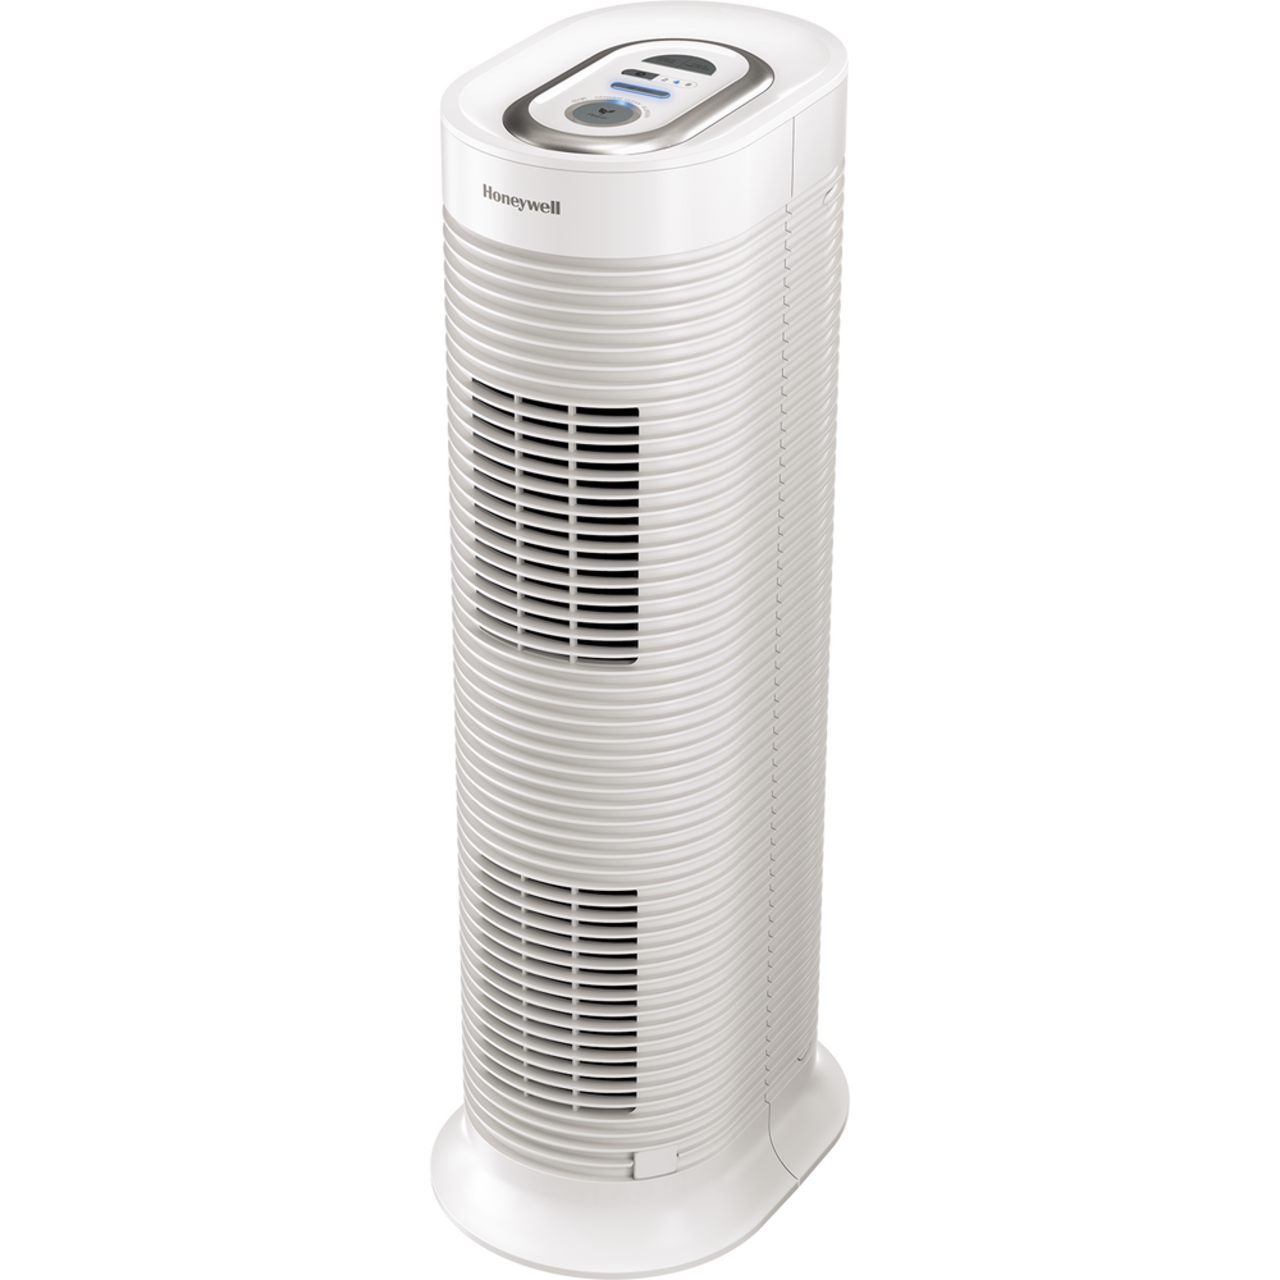 Purificateur d'air HEPA anti-allergènes Honeywell, blanc, minuterie d'arrêt  automatique, couvre 155 pi² HPA1104C